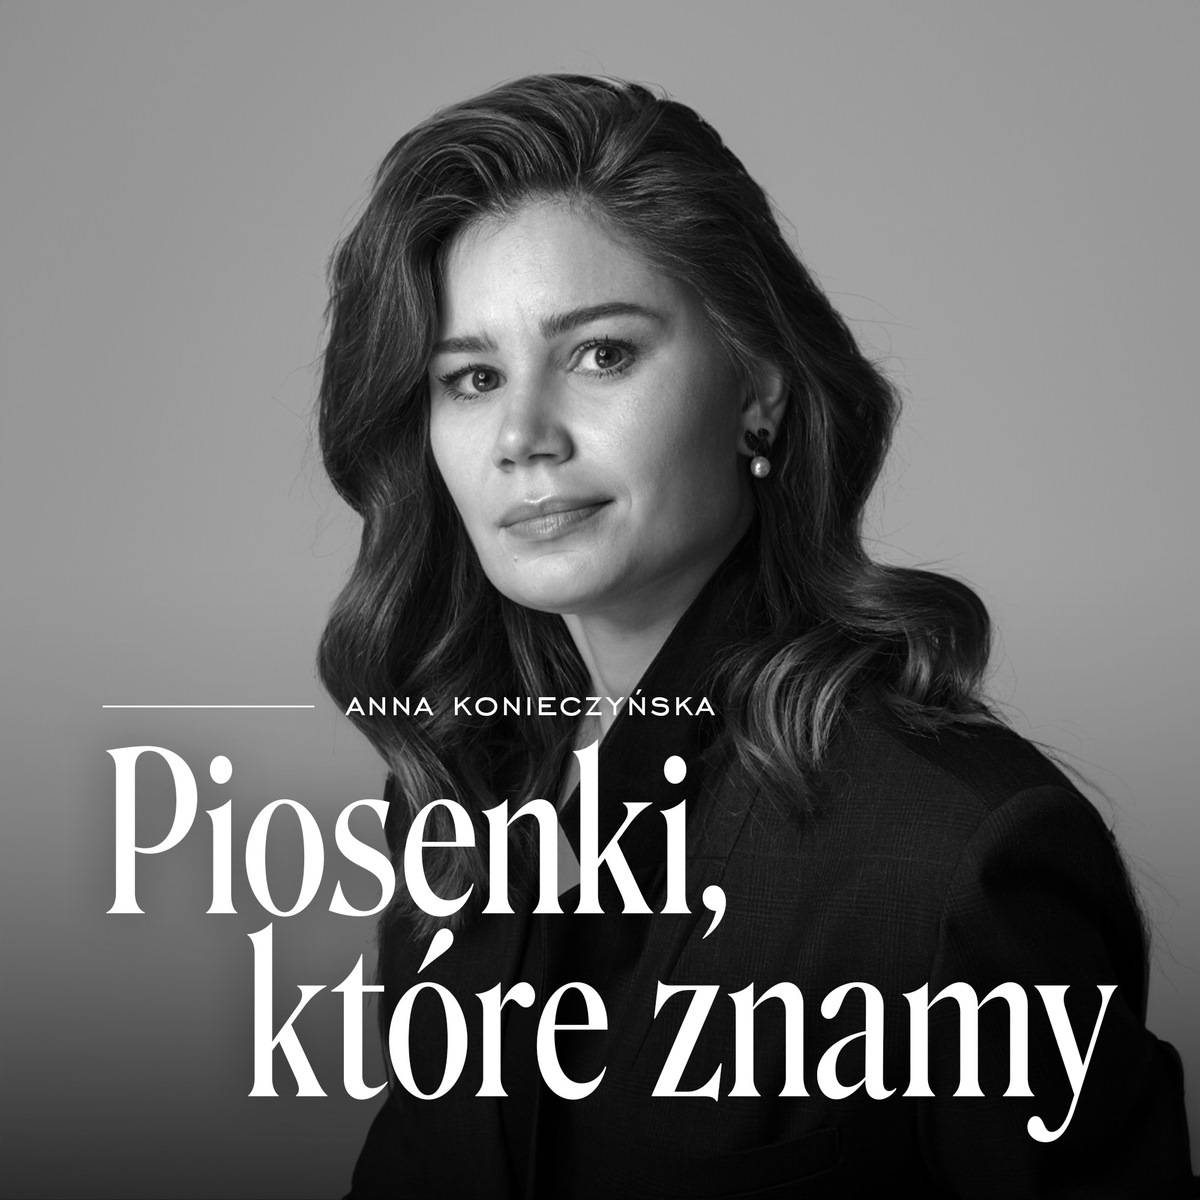 Podcast „Piosenki, które znamy” Anny Konieczyńskiej.